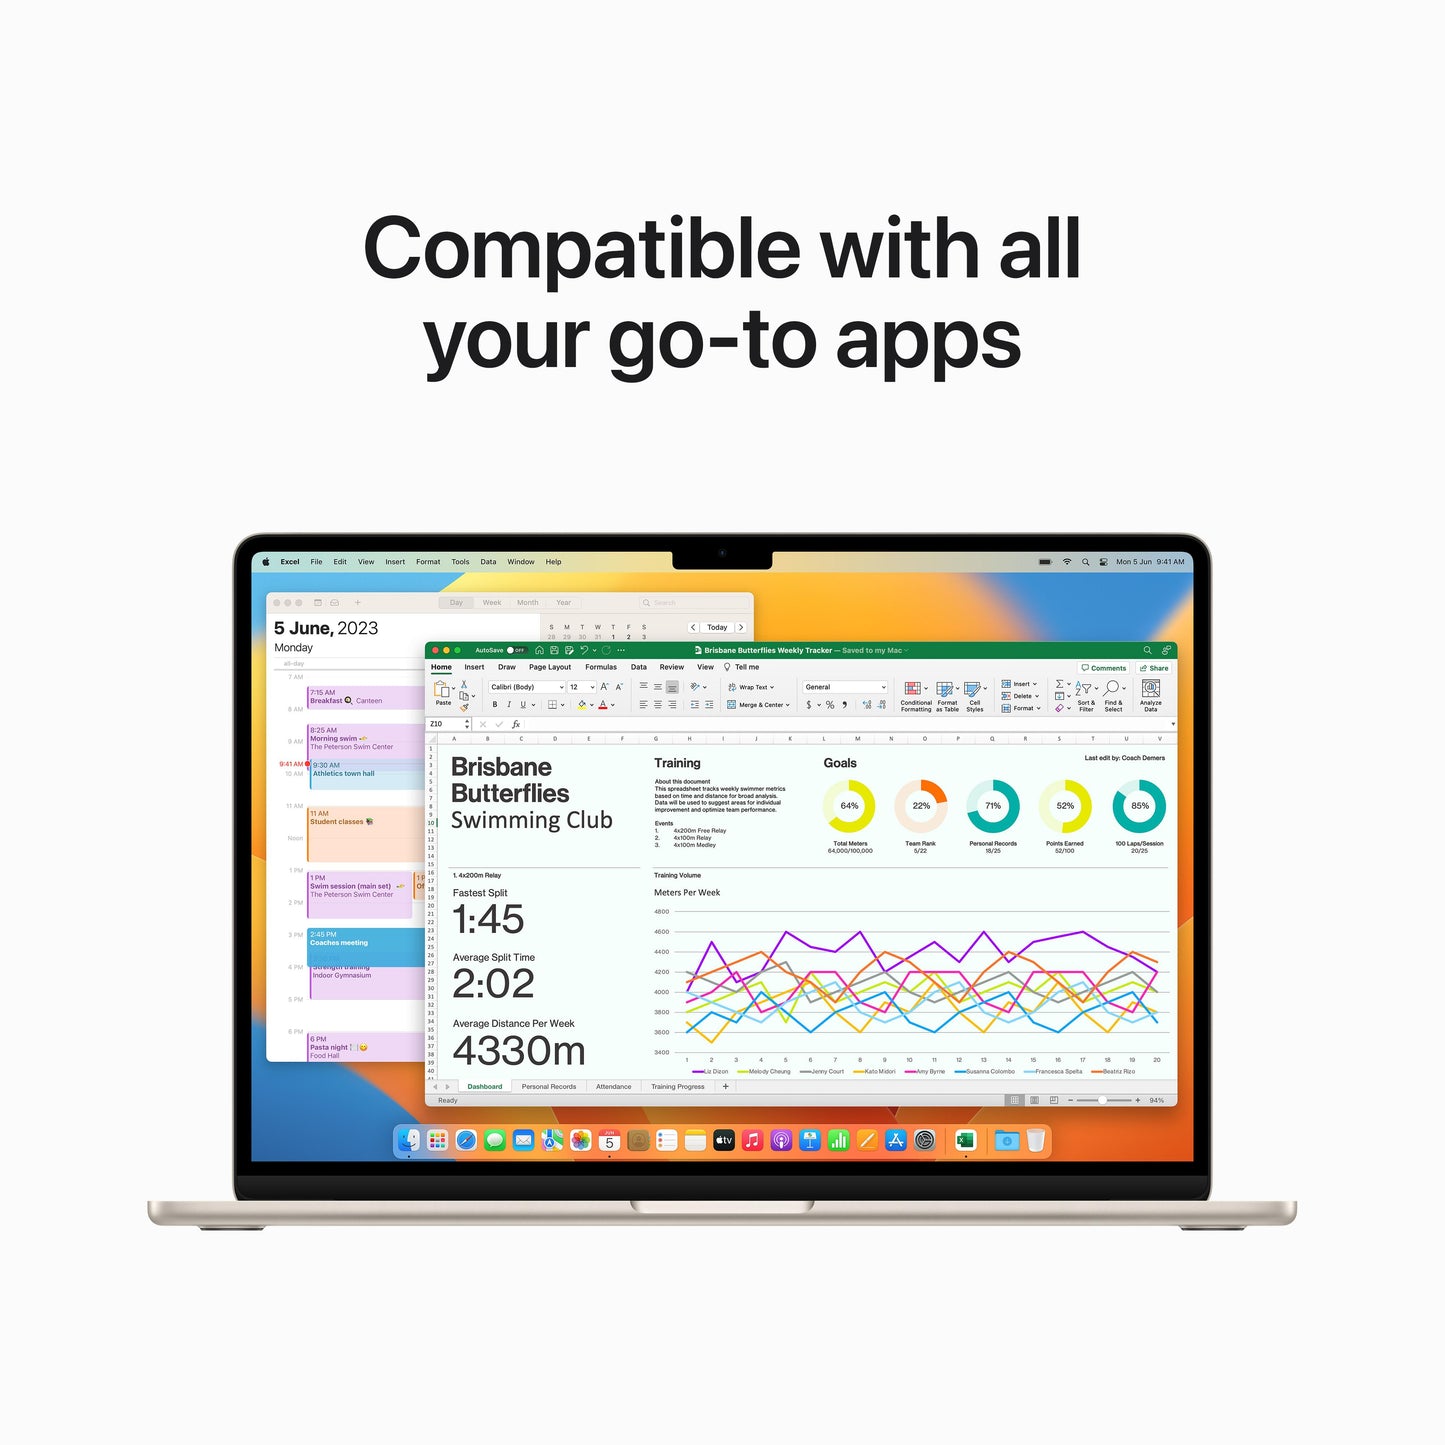 MacBook Air مقاس 15 انش: شريحة Apple M2 مع وحدة المعالجة المركزية 8 نوى ووحدة معالجة الرسومات 10 نوى، 512 جيجابايت SSD - ستارلايت